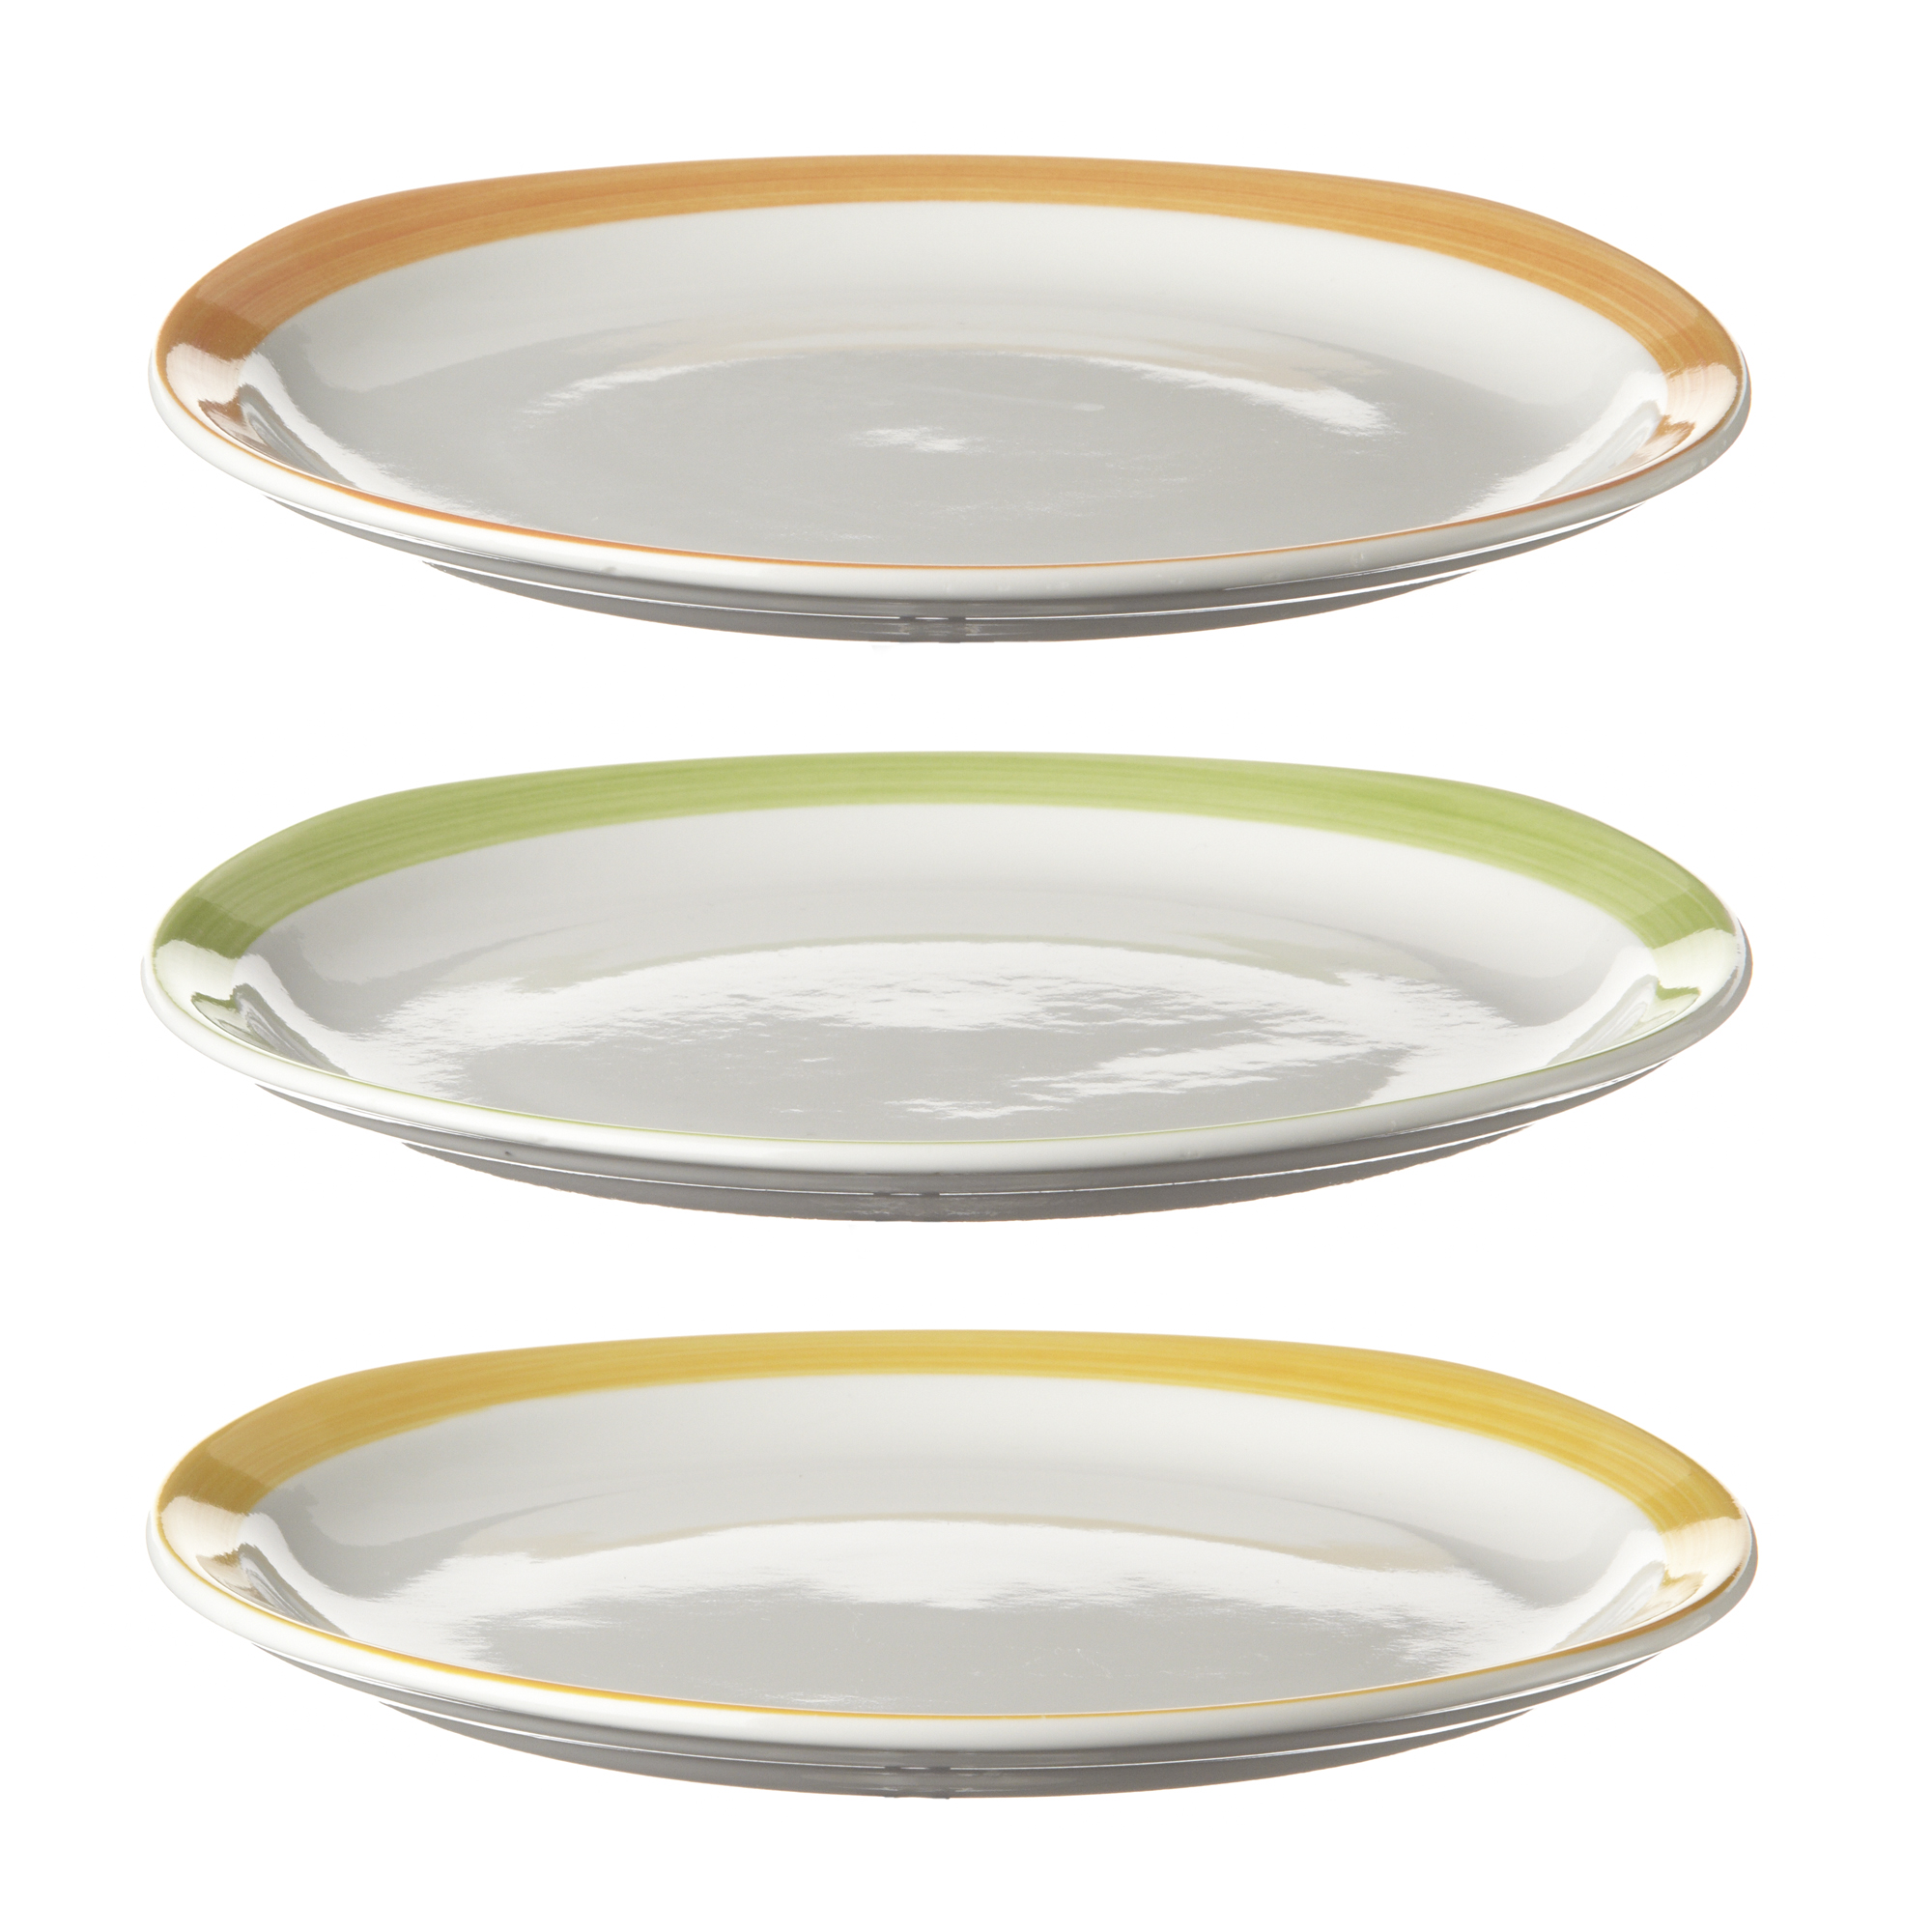 Assiette plate Oslo Pinceau en porcelaine 188 mm x 180 mm